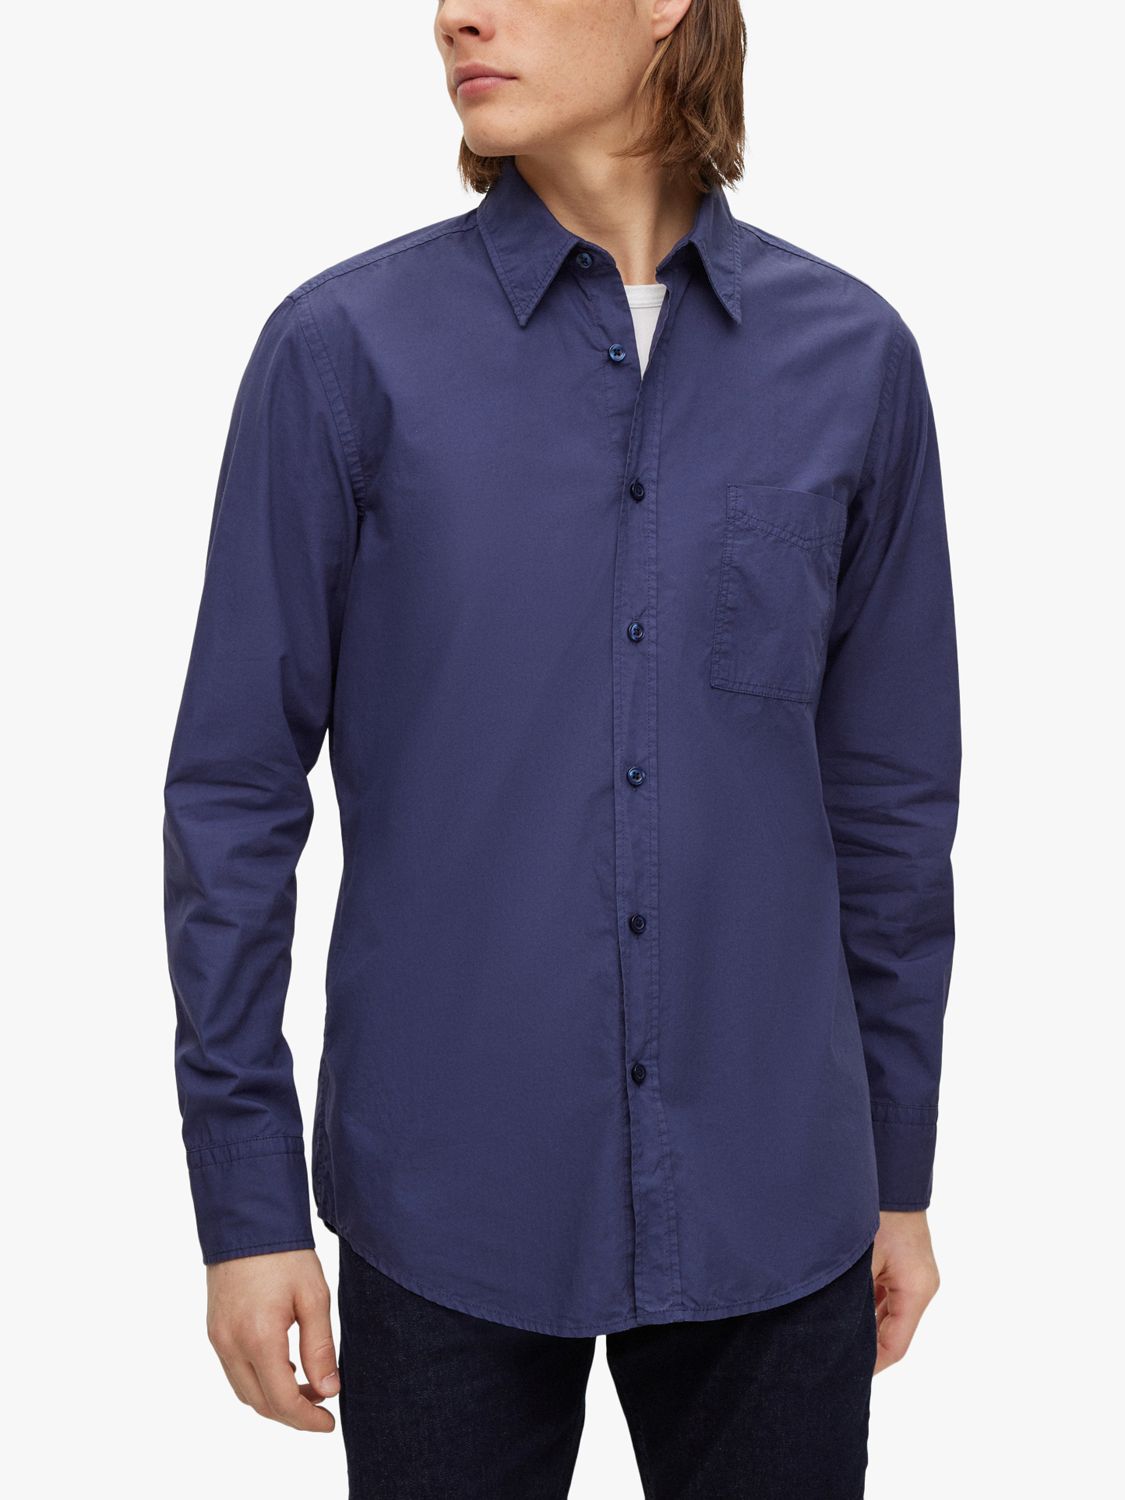 BOSS Relegant Regular Fit Garment Dyed Shirt, Navy, XL